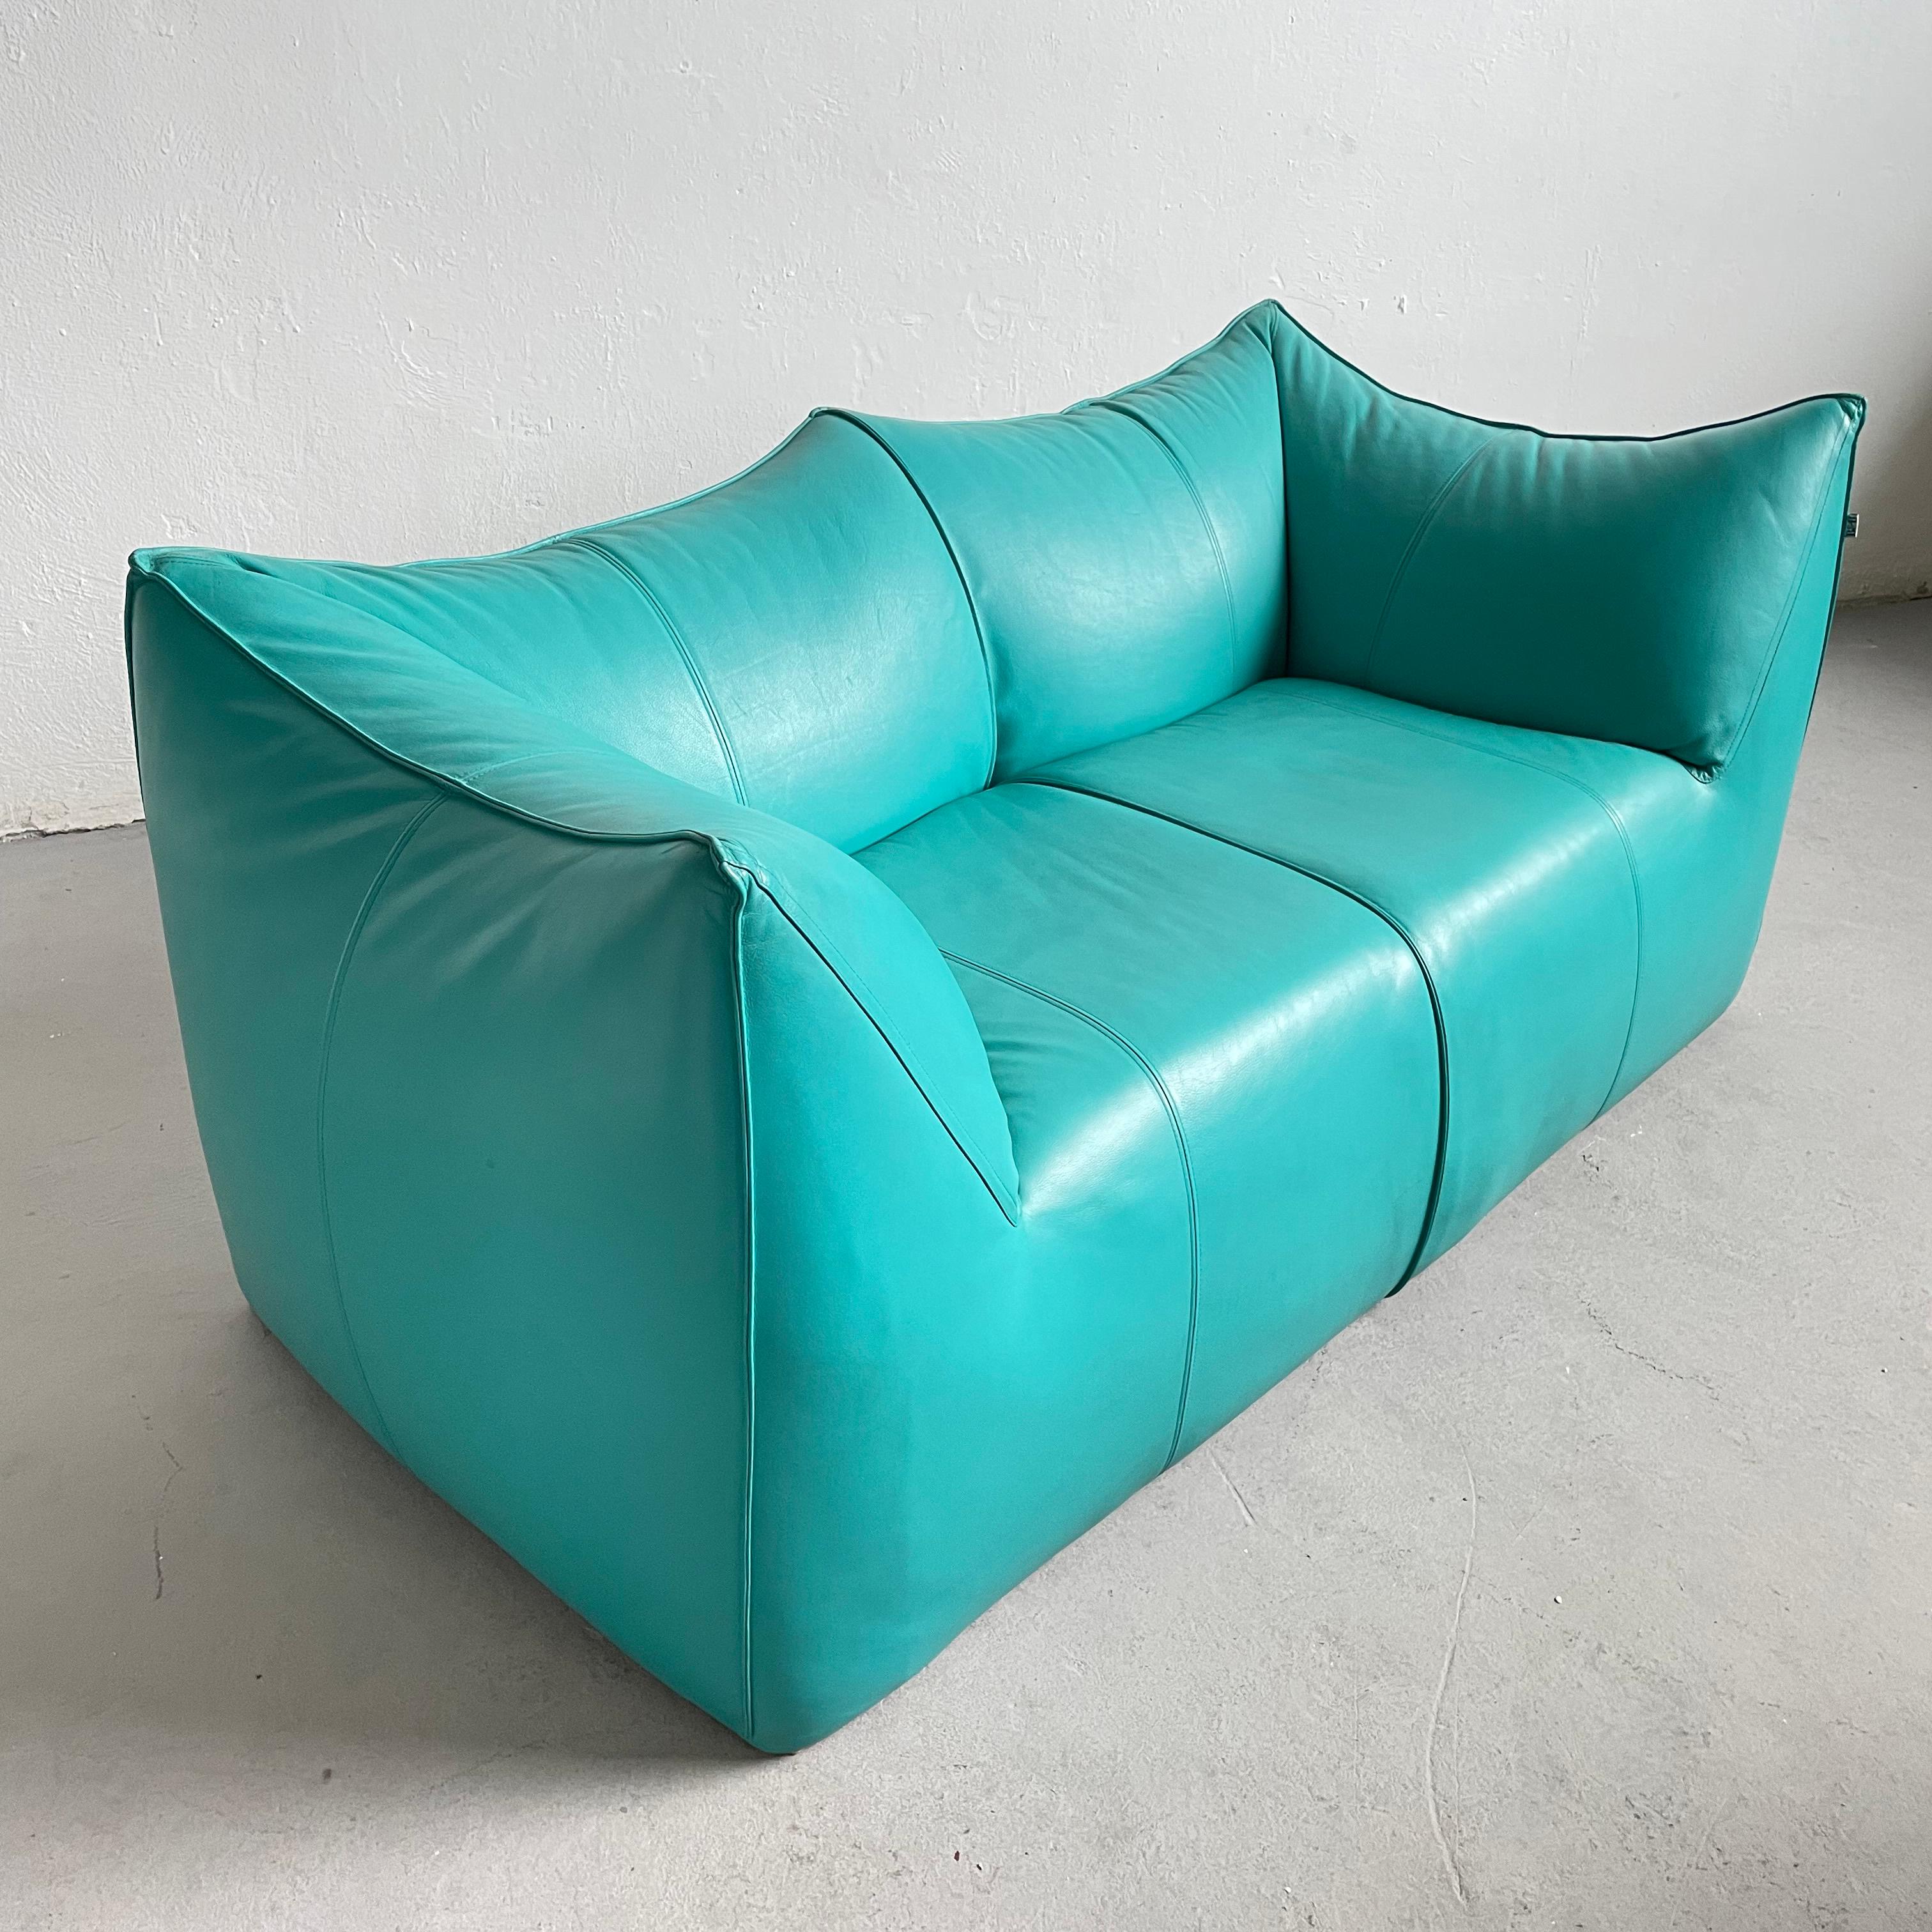 Italian Le Bambole 2-Seater Sofa in Turquoise Leather, Mario Bellini for B&B Italia 70s For Sale